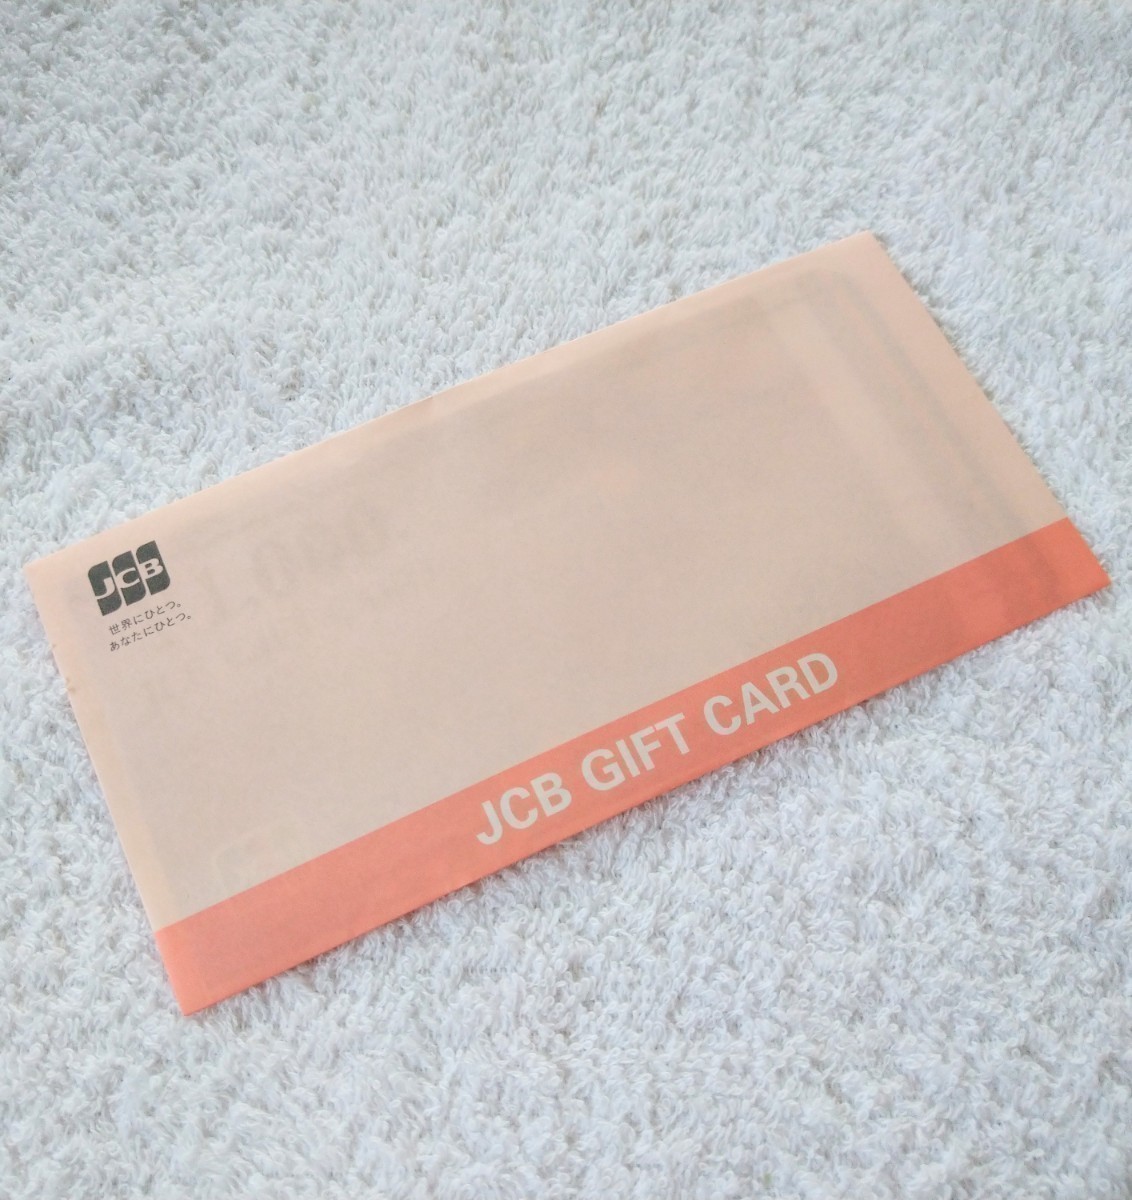 特定記録・送料無料】JCBギフトカード JCB GIFT CARD 10000円分 (1000